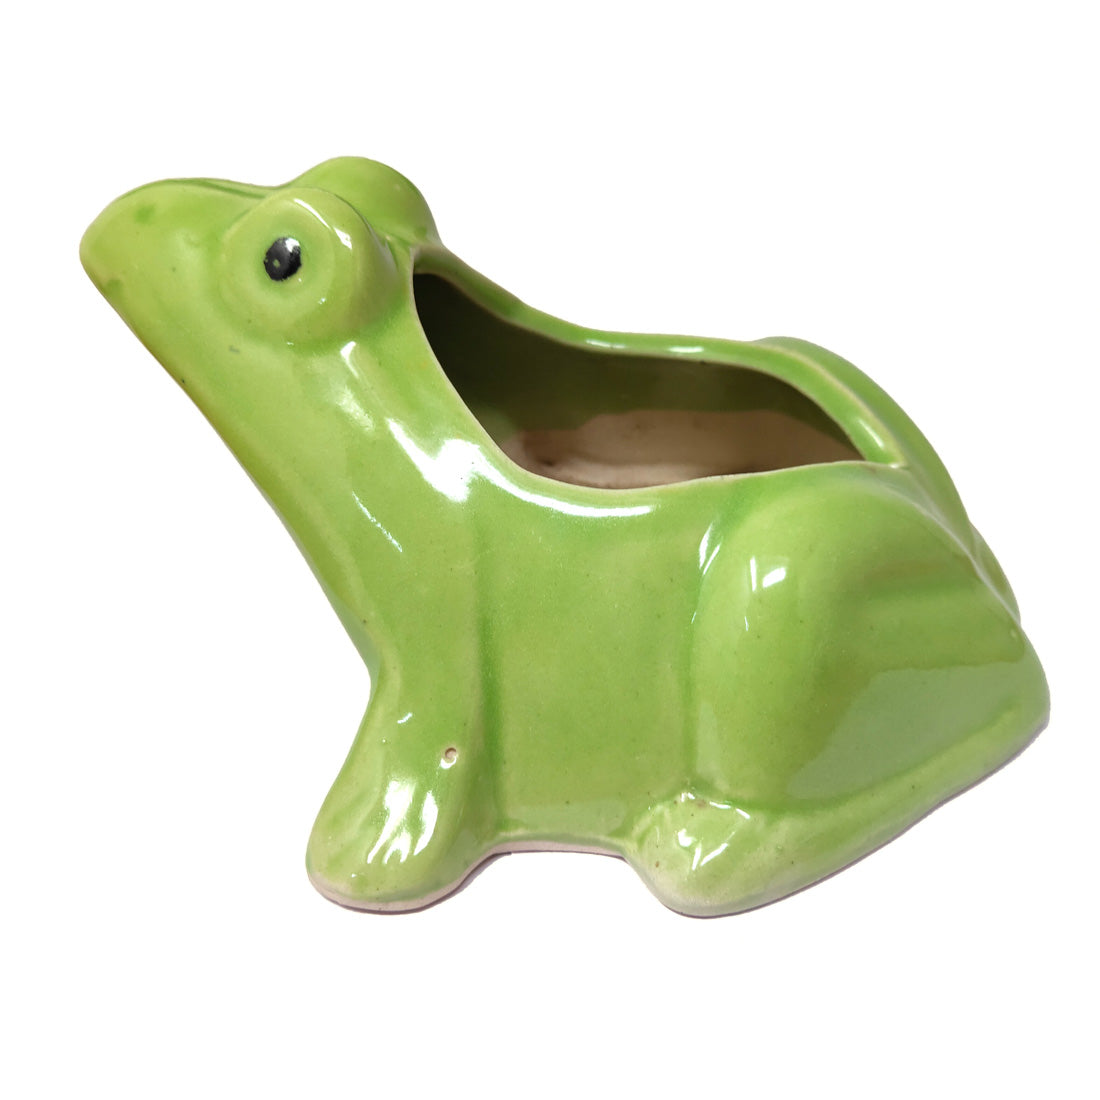 Anokhi Ada Frog Design Ceramic Planters Pots for Home Decoration ( Green, DA-006)